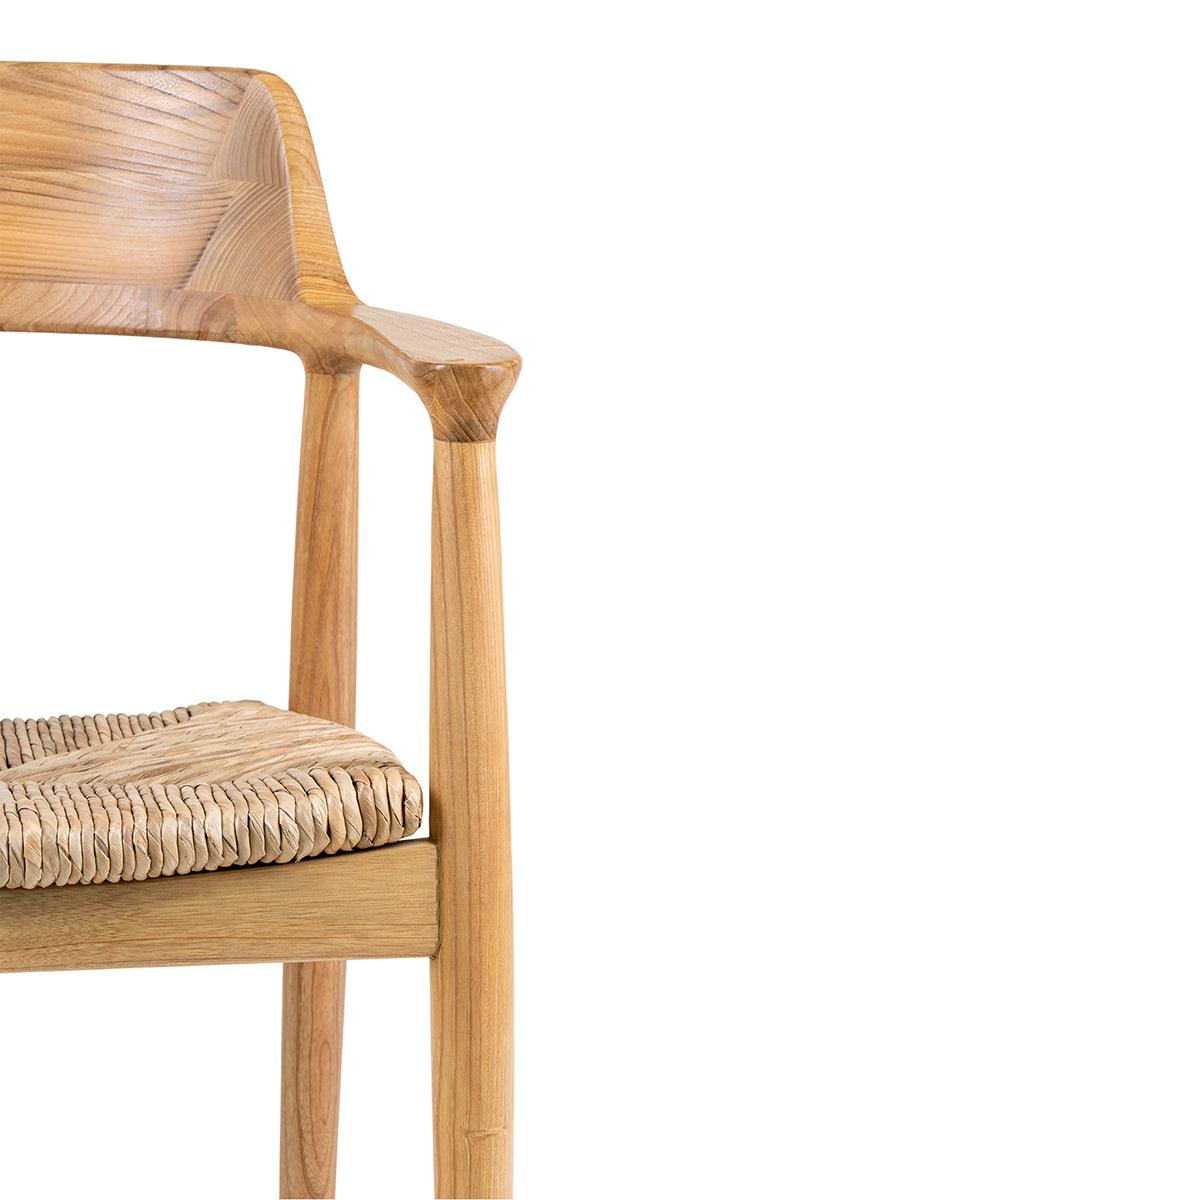 Getafe Natural Sungkai Wood Dining Chair (2/Set) - WOO .Design